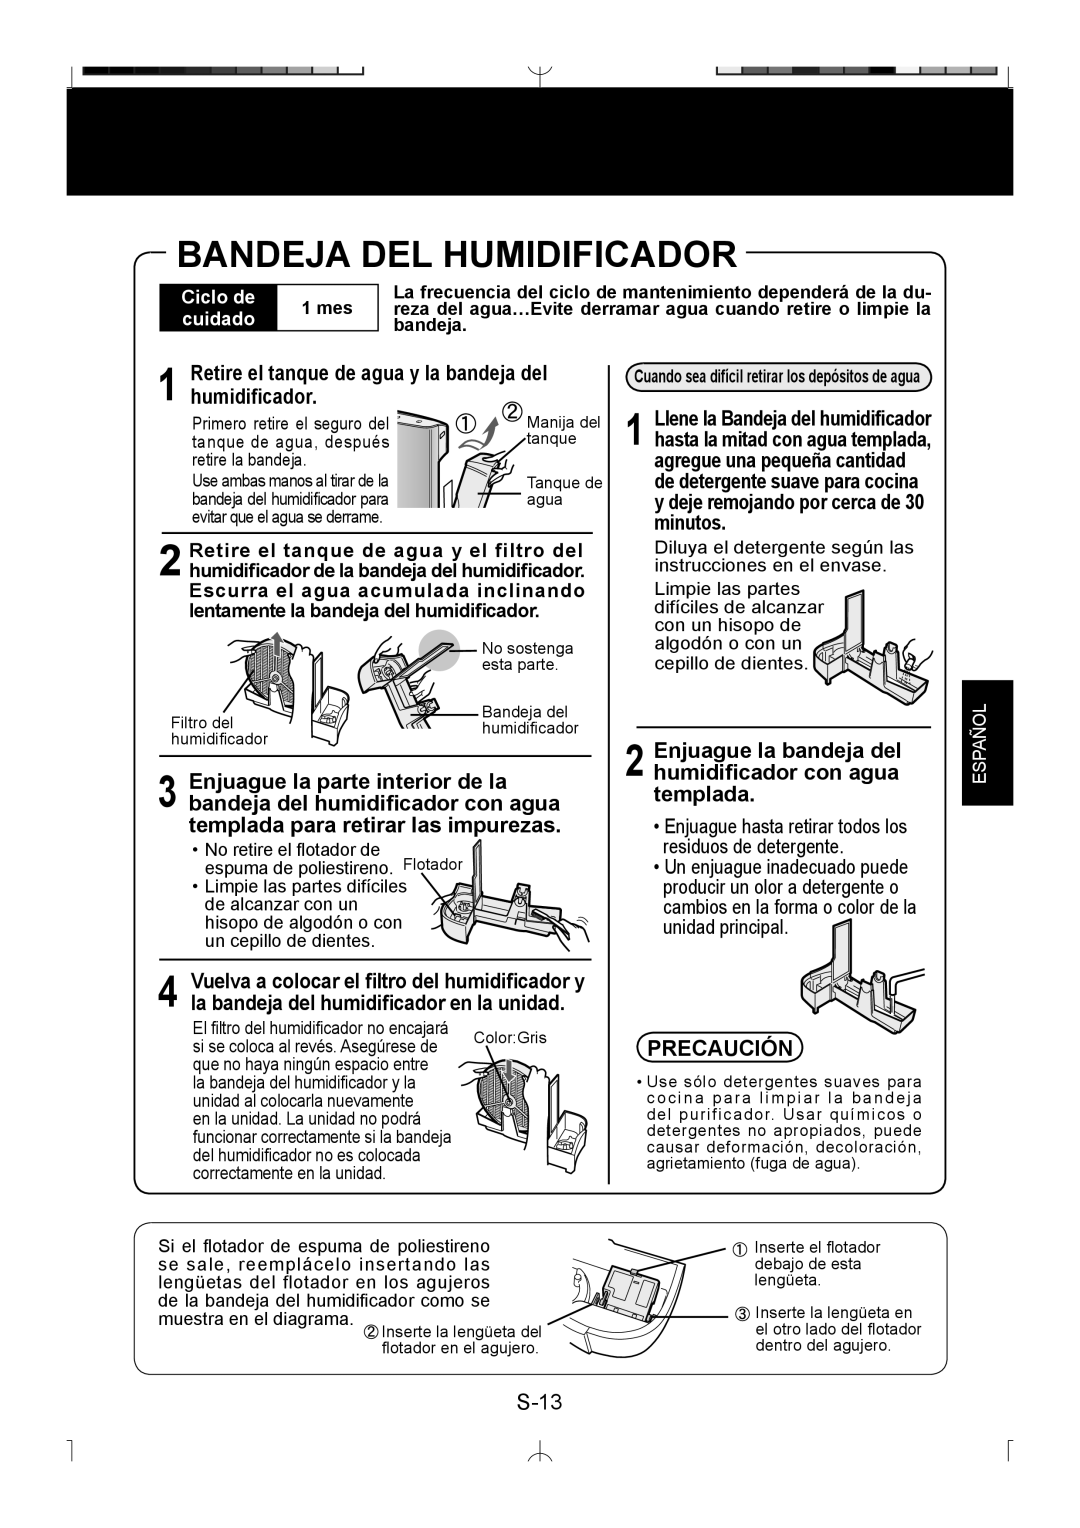 Sharp KC-850U operation manual Bandeja Del Humidificador, Precaución 